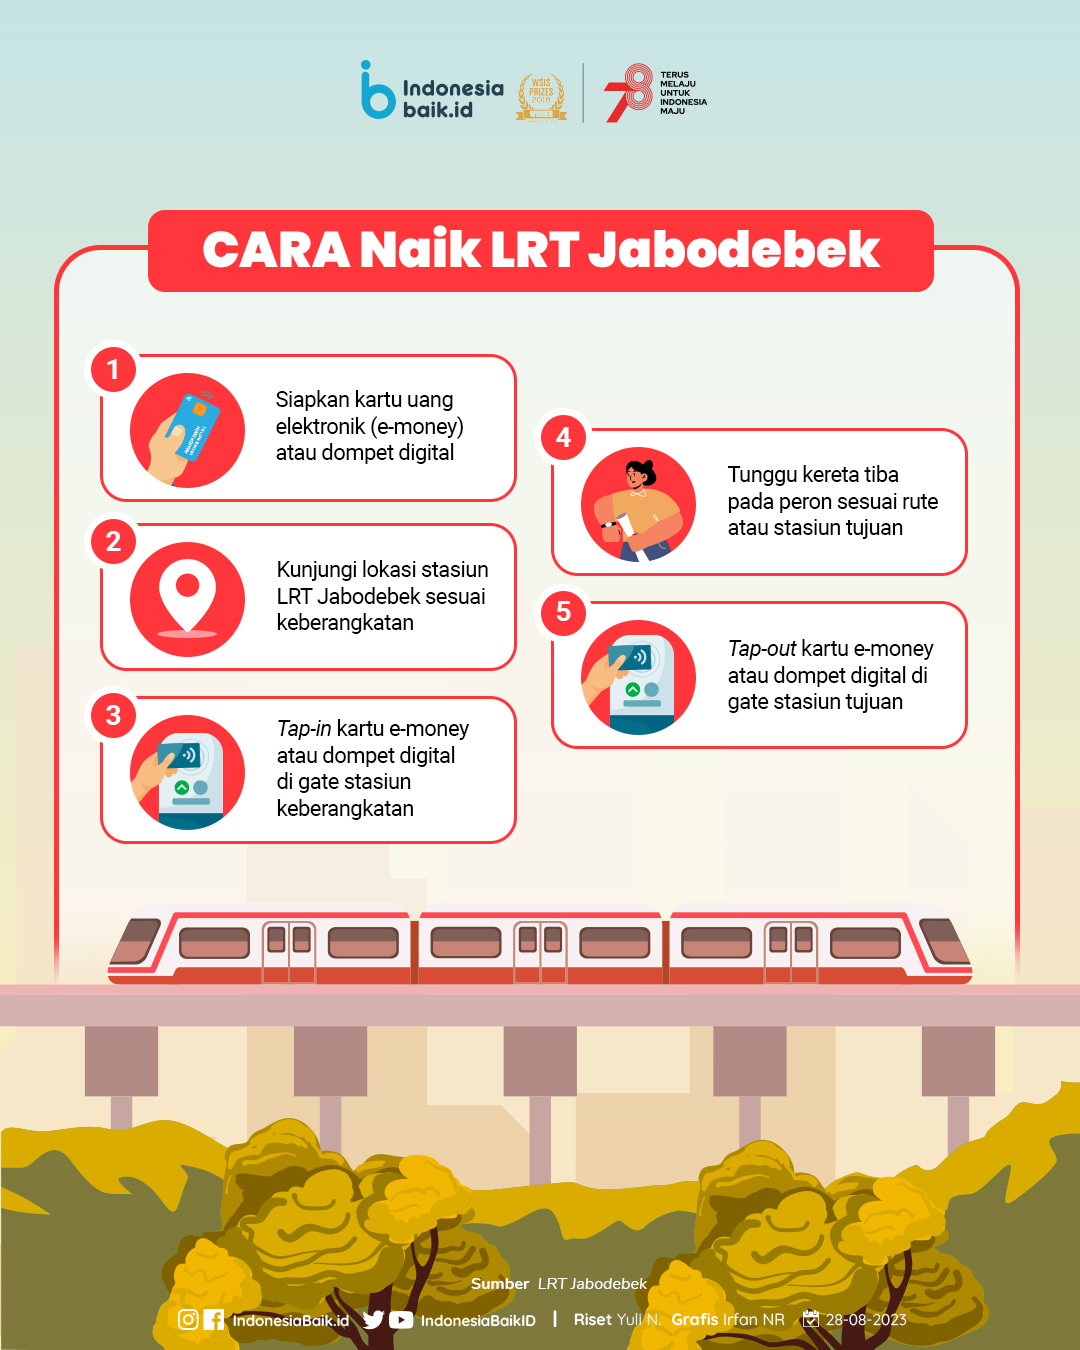 Cara menaiki LRT Jabodebek